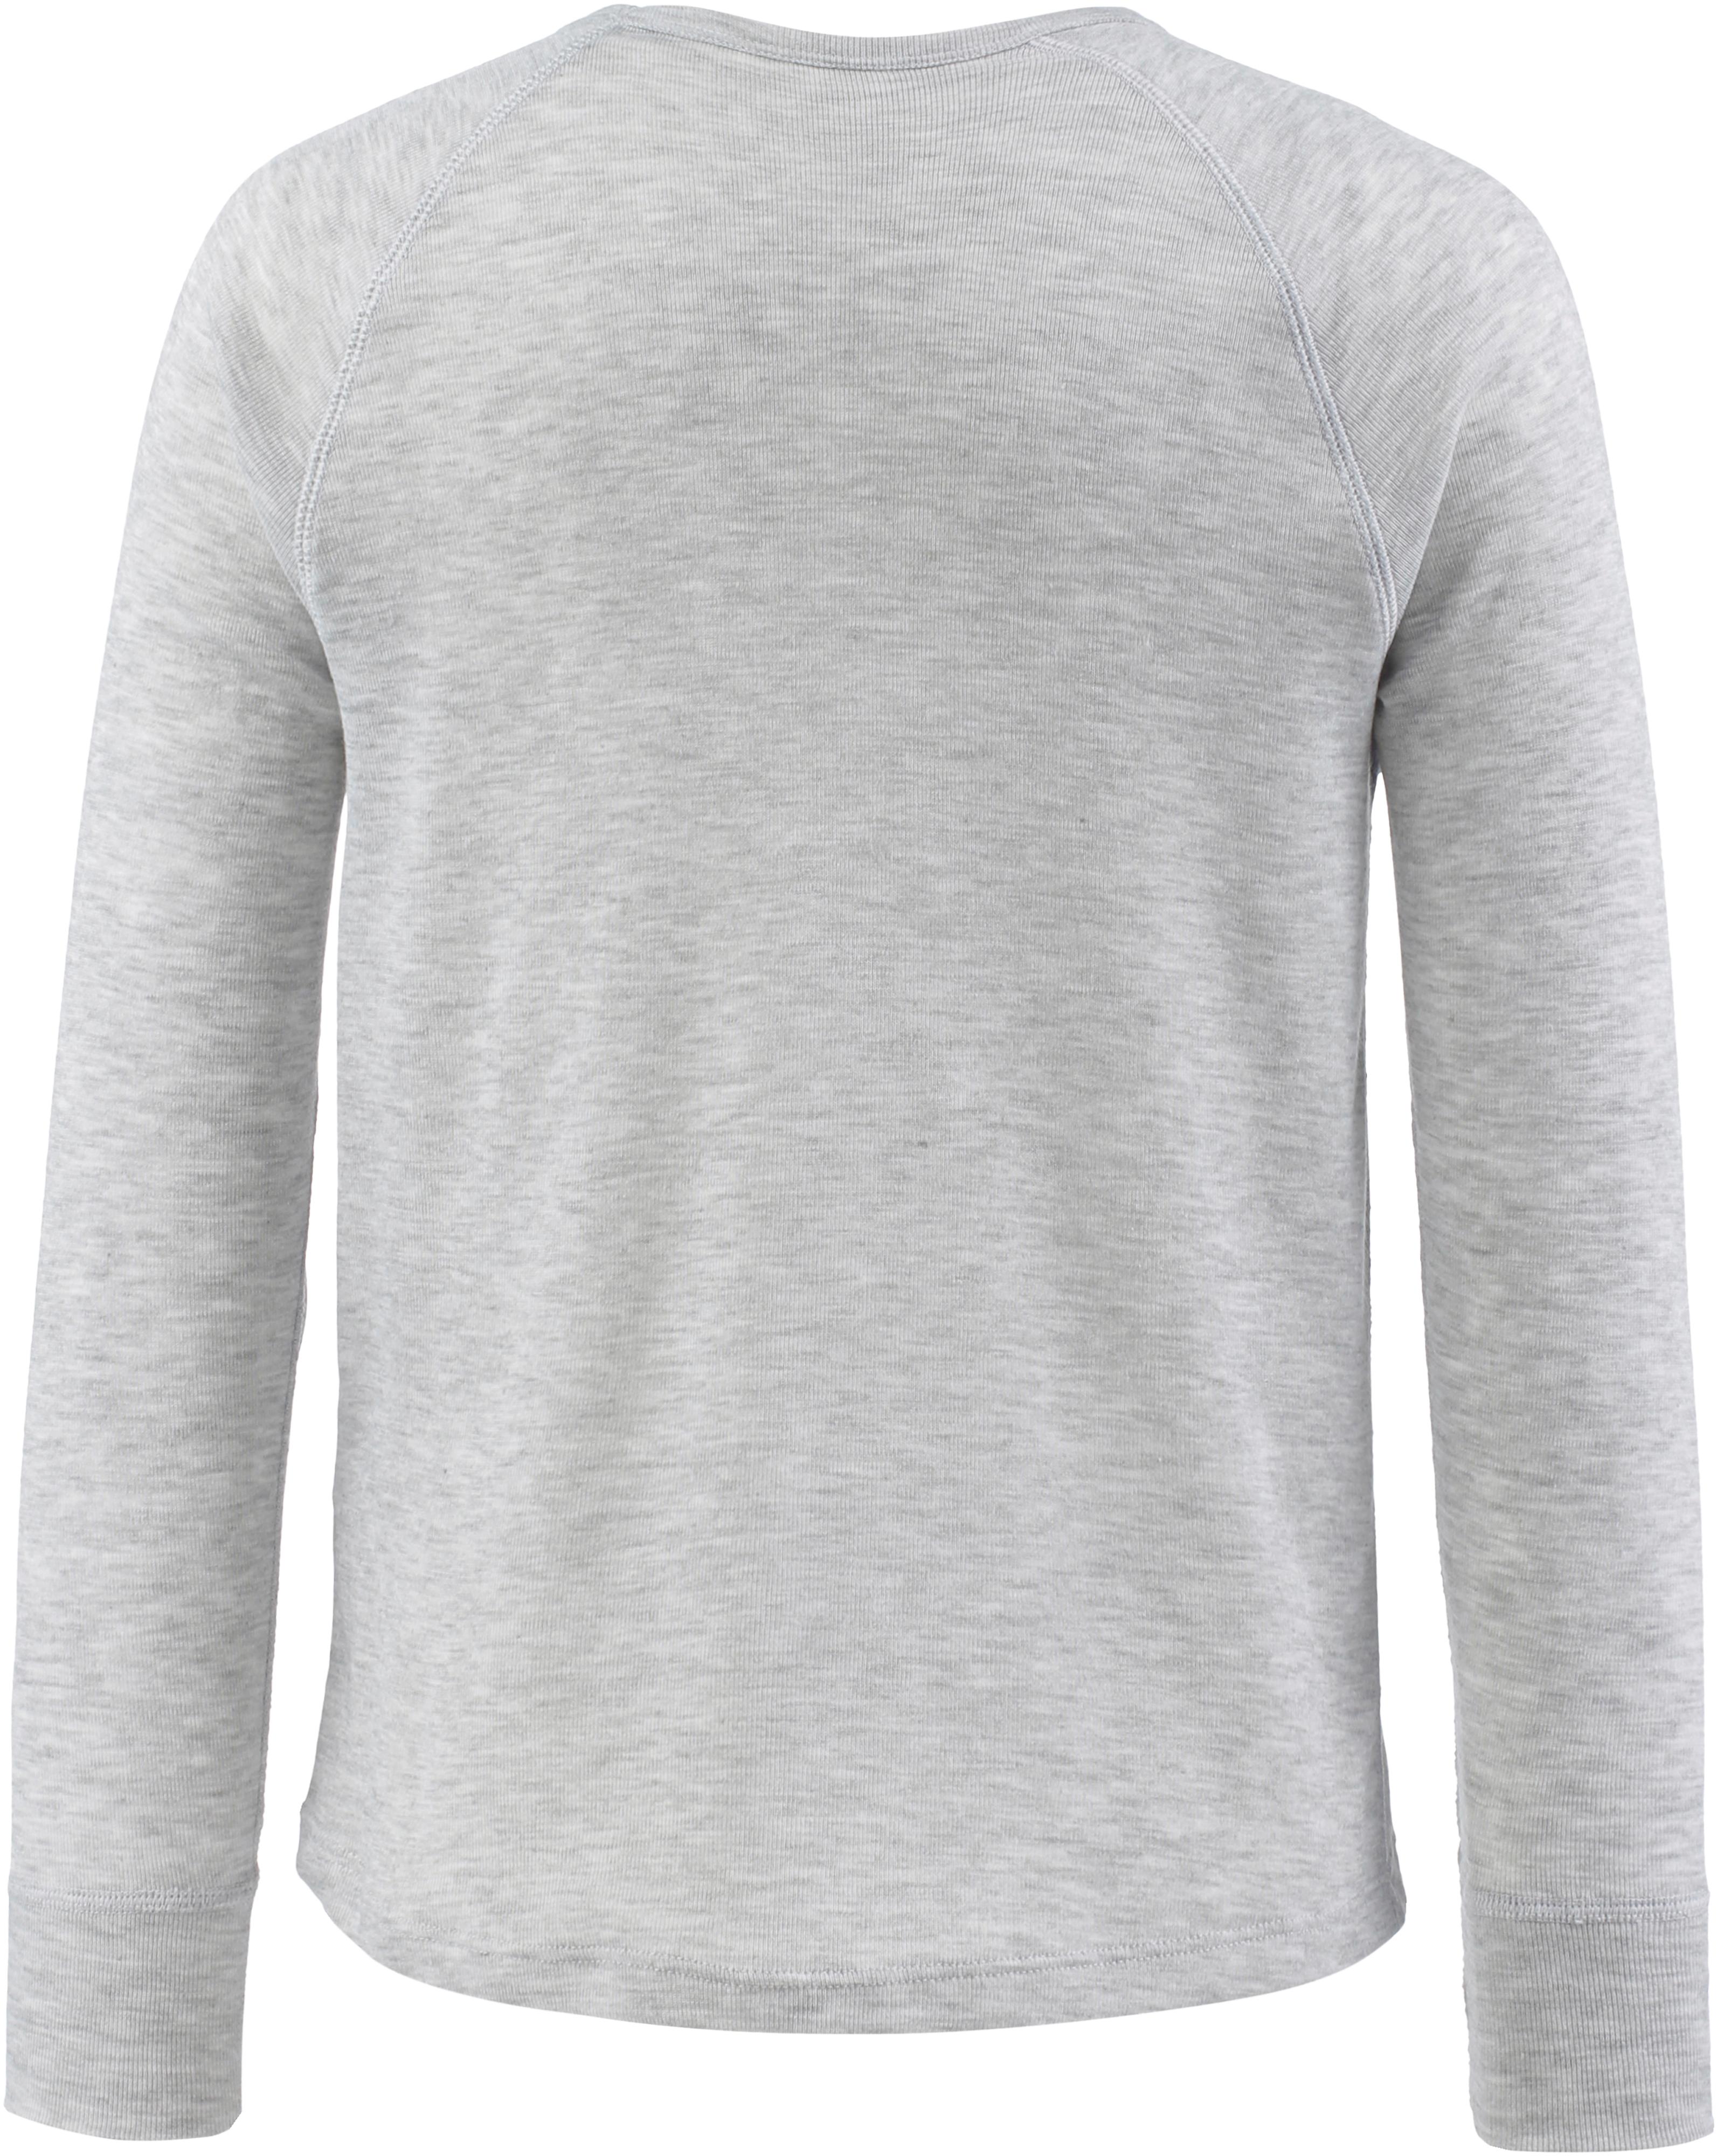 CMP Unterhemd Jungen grigio melange im Online Shop von SportScheck kaufen